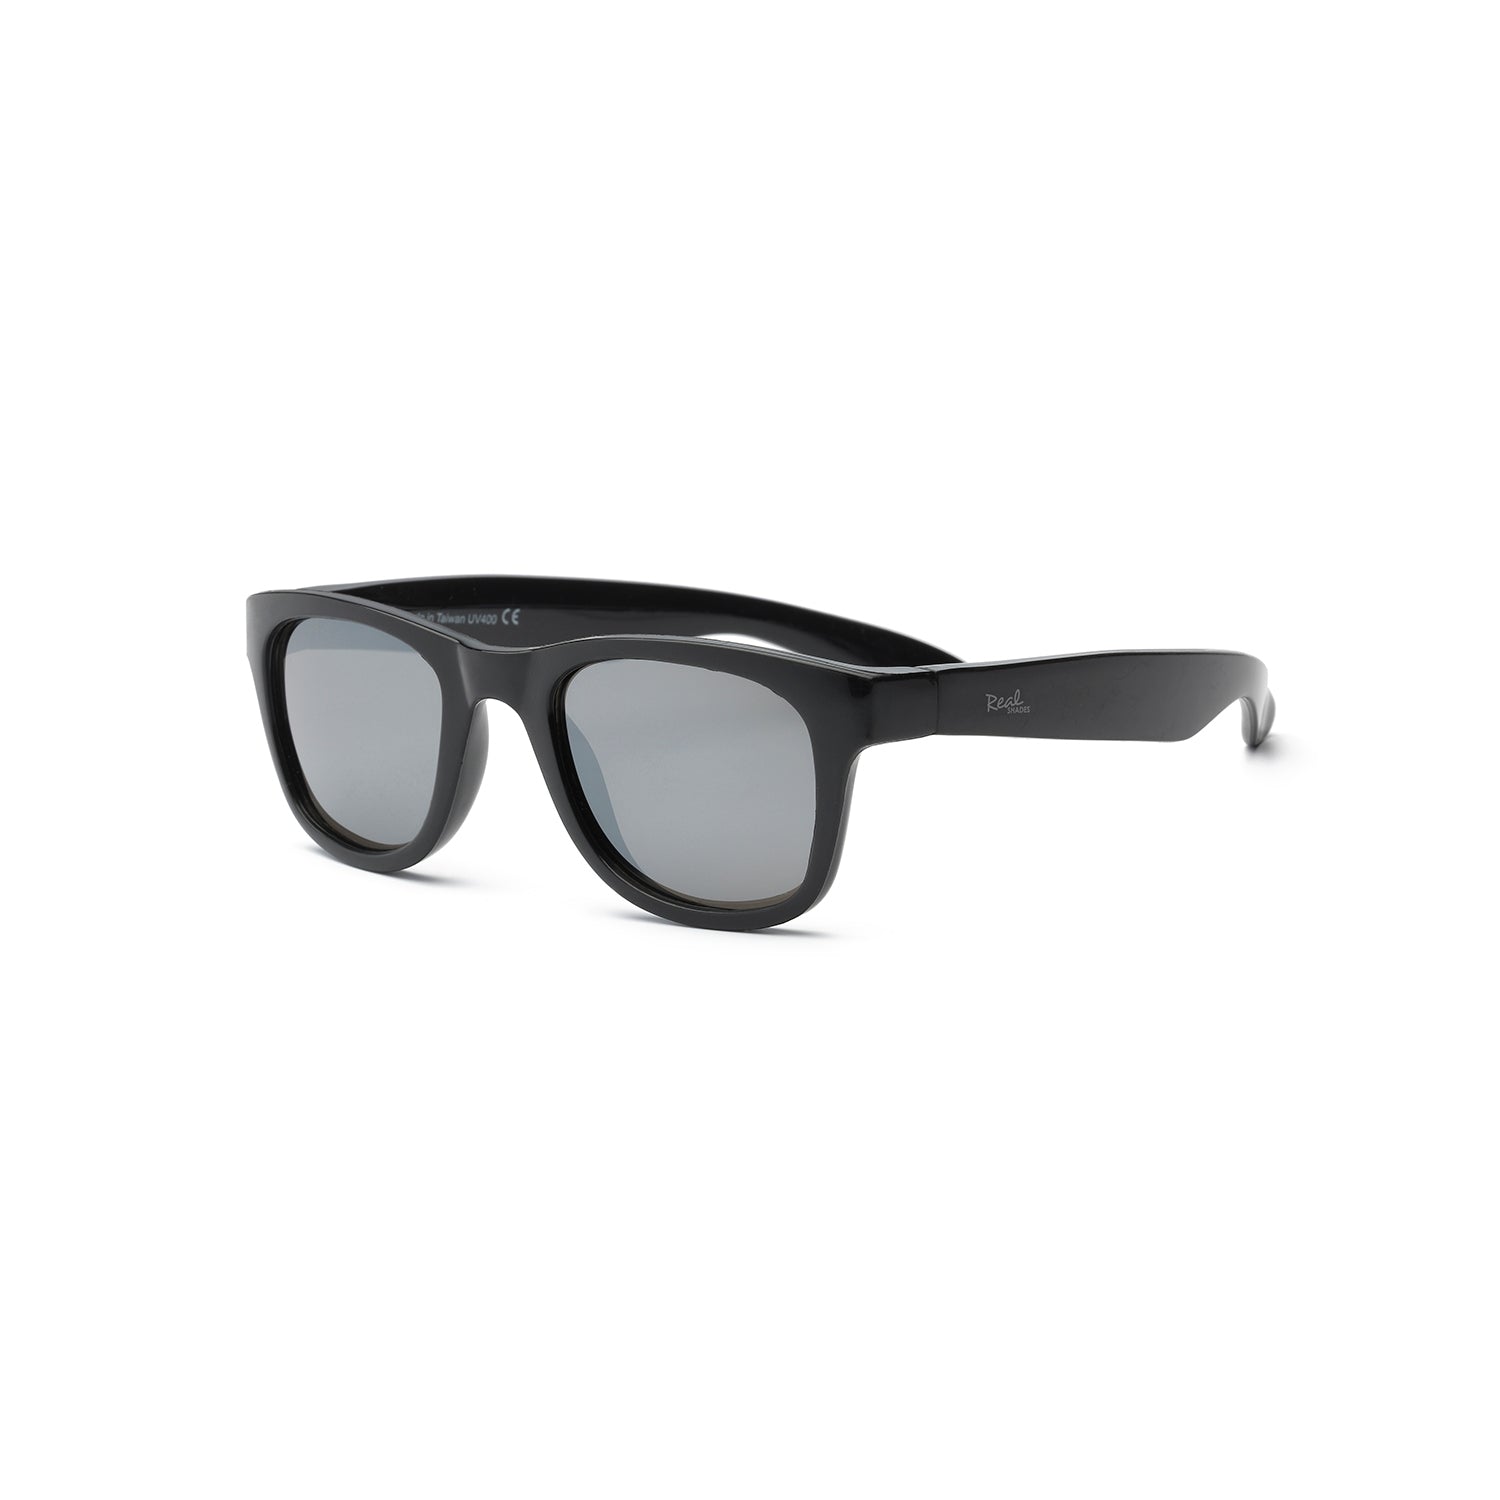 Surf Flexible Frame Sunglasses | Black